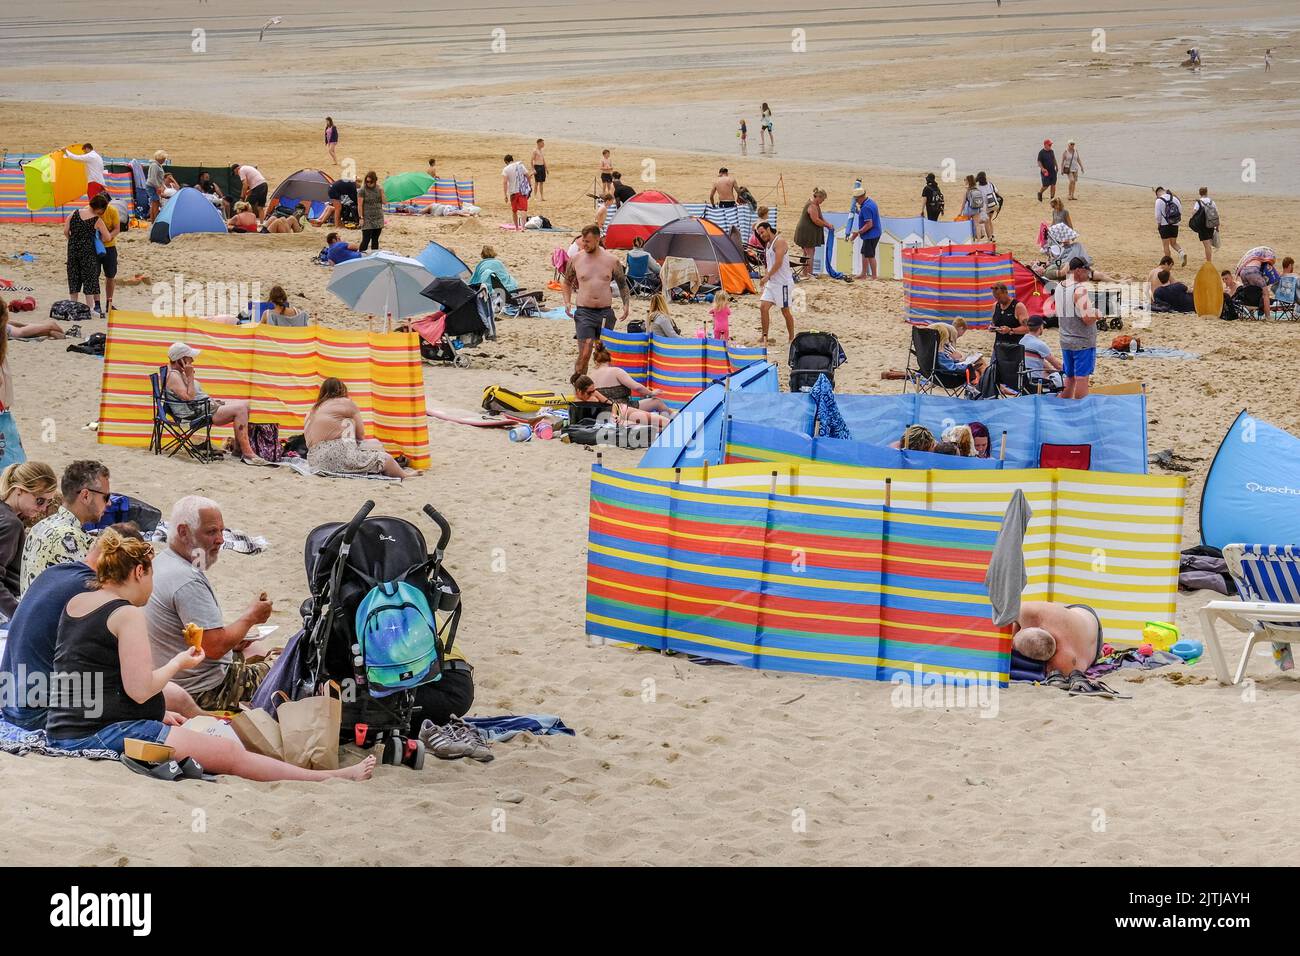 In uno dei giorni più caldi dell'anno nel Regno Unito, i villeggianti di Fistral Beach hanno goduto del caldo sole e della fresca brezza marina di benvenuto Foto Stock